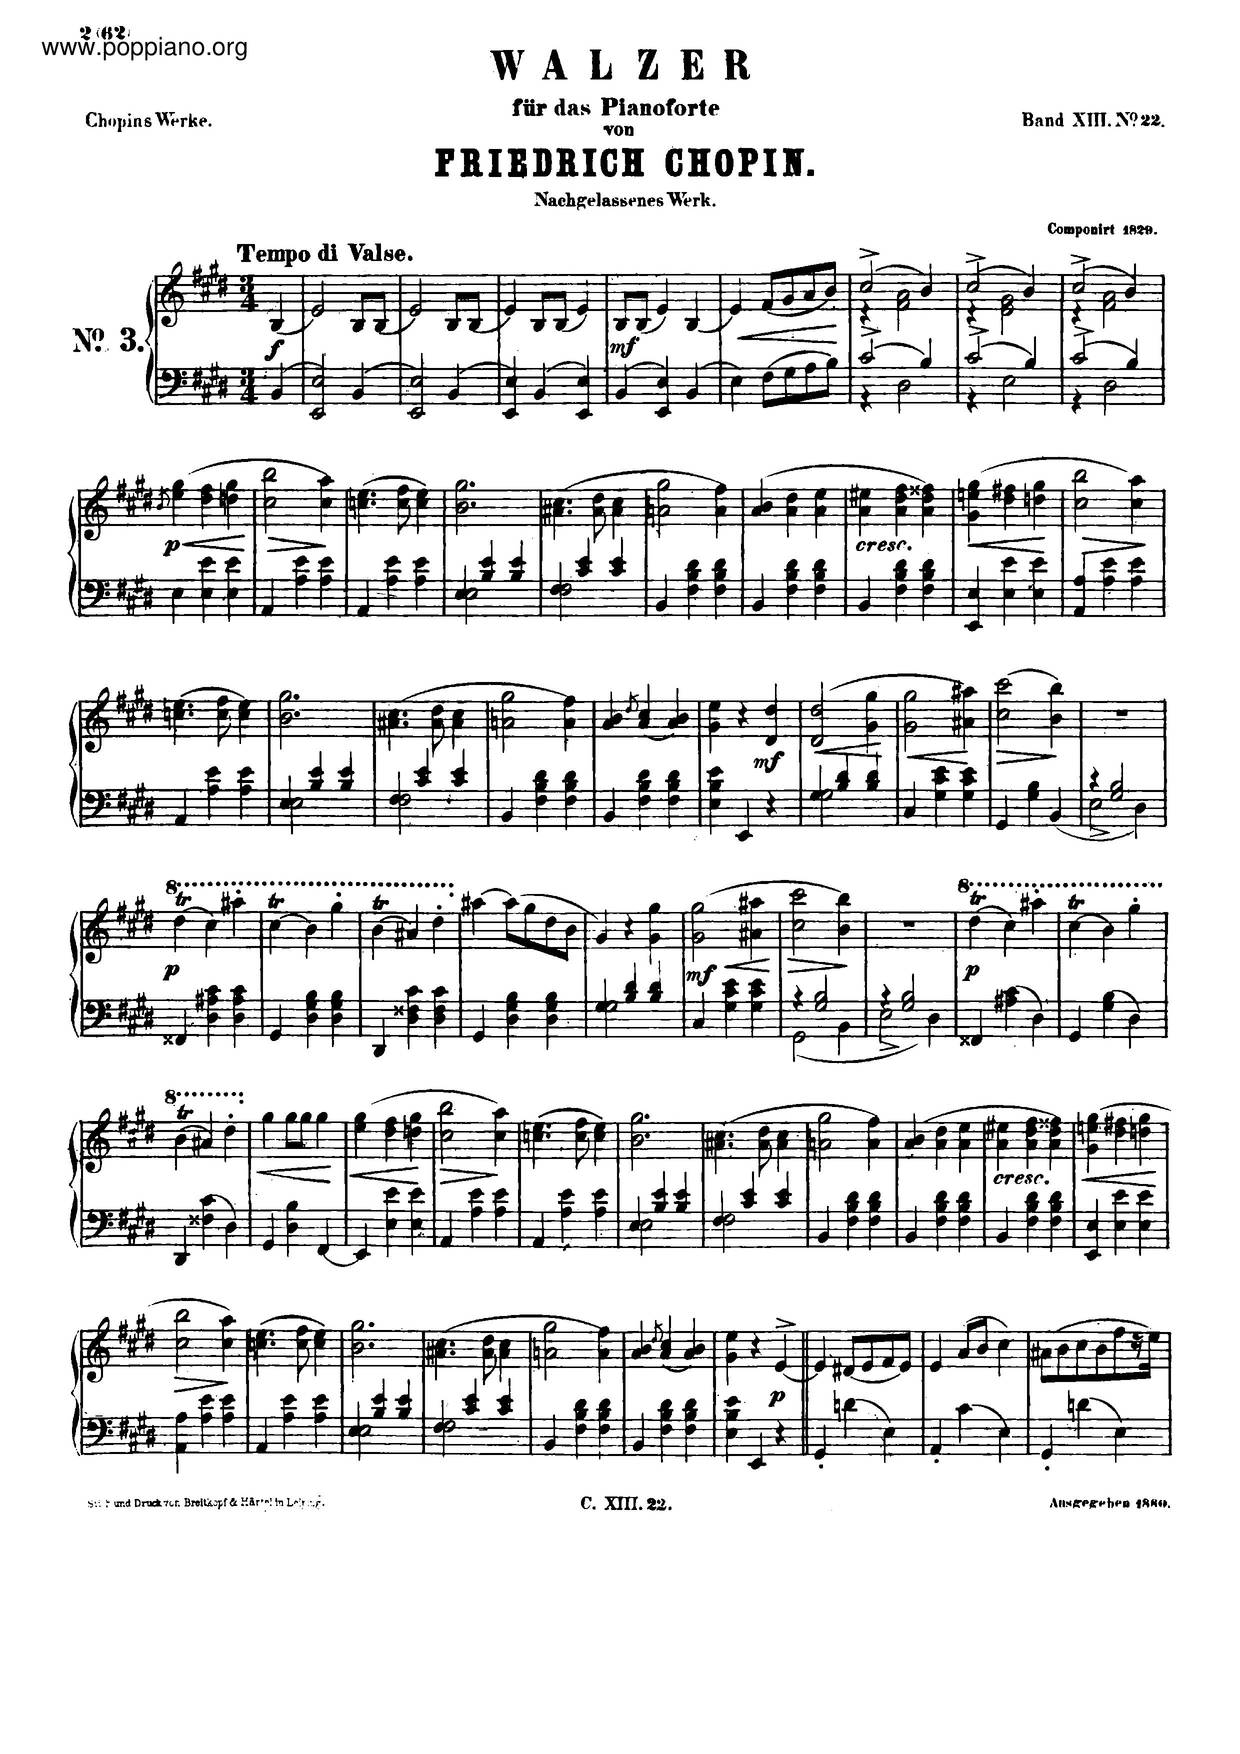 Waltz In E Major, B. 44 Score